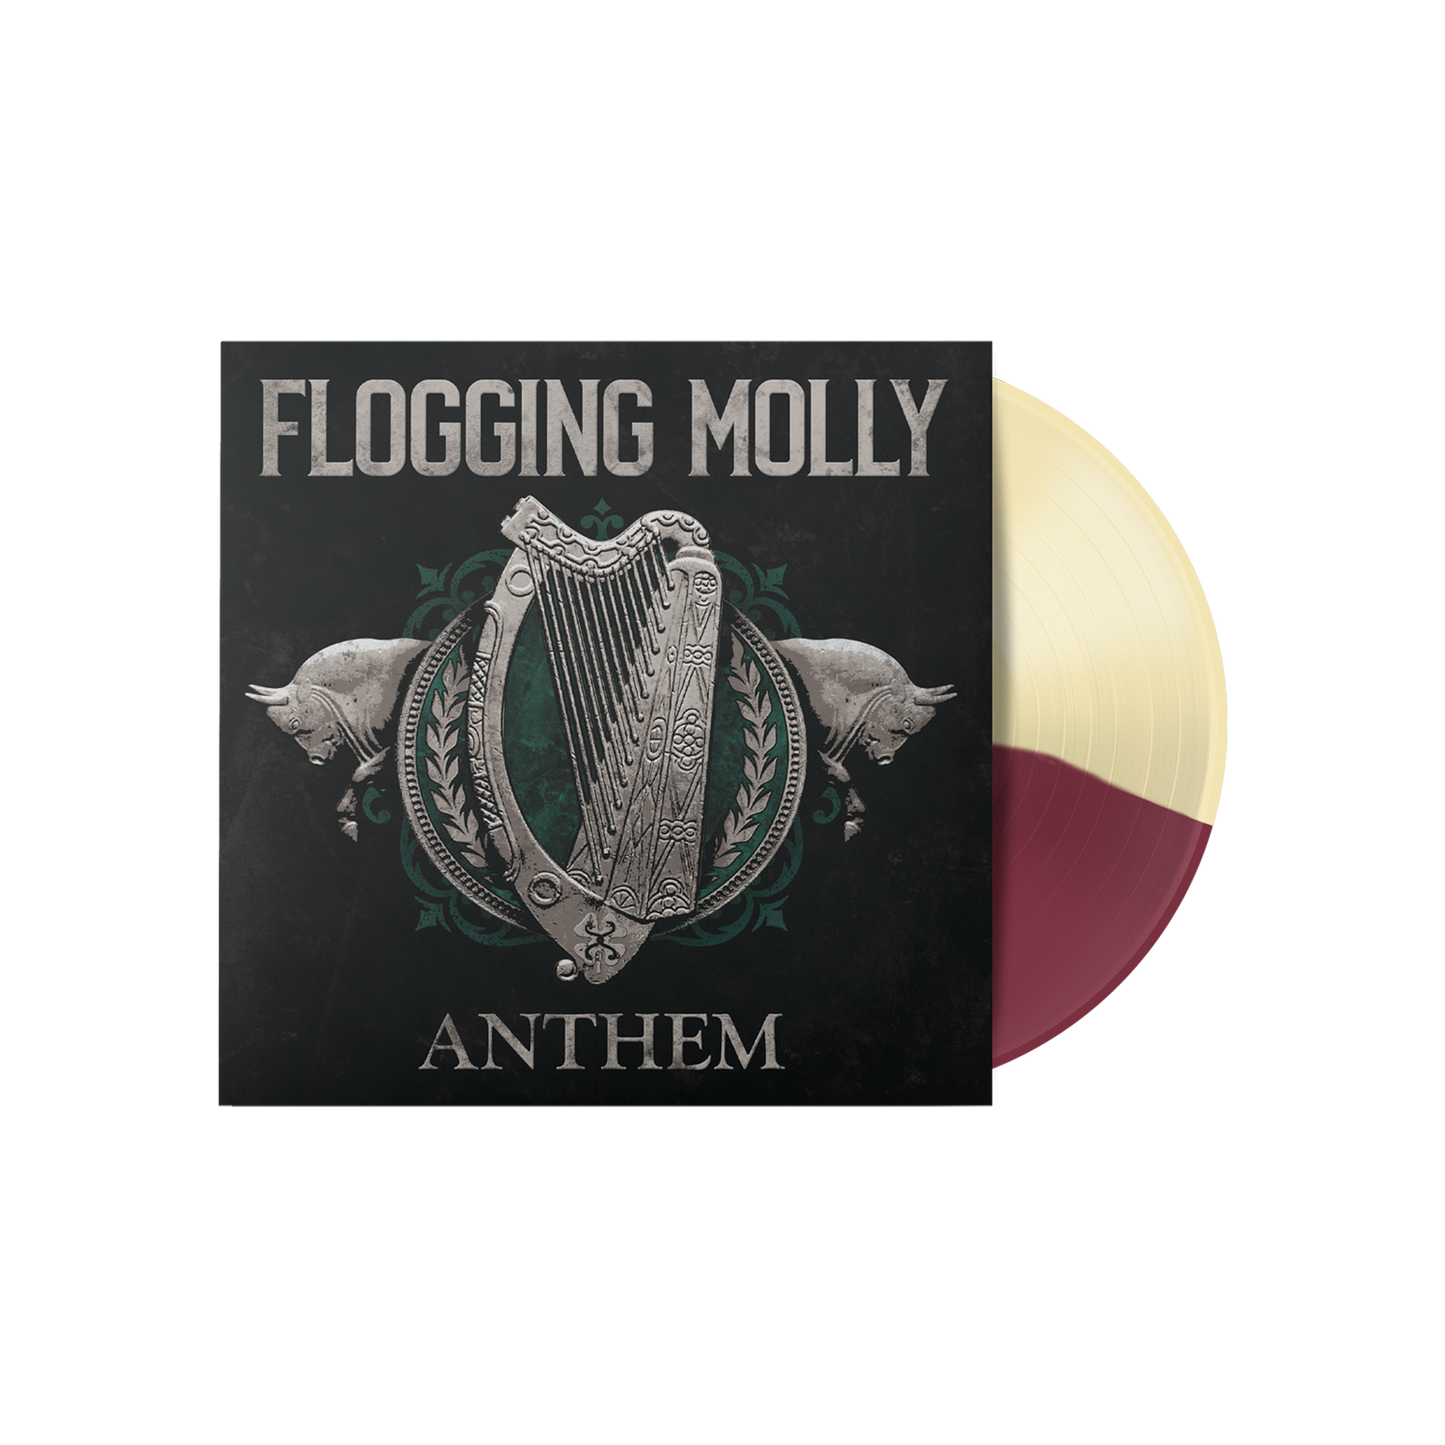 Anthem LP (colored vinyl: Cream & Maroon)